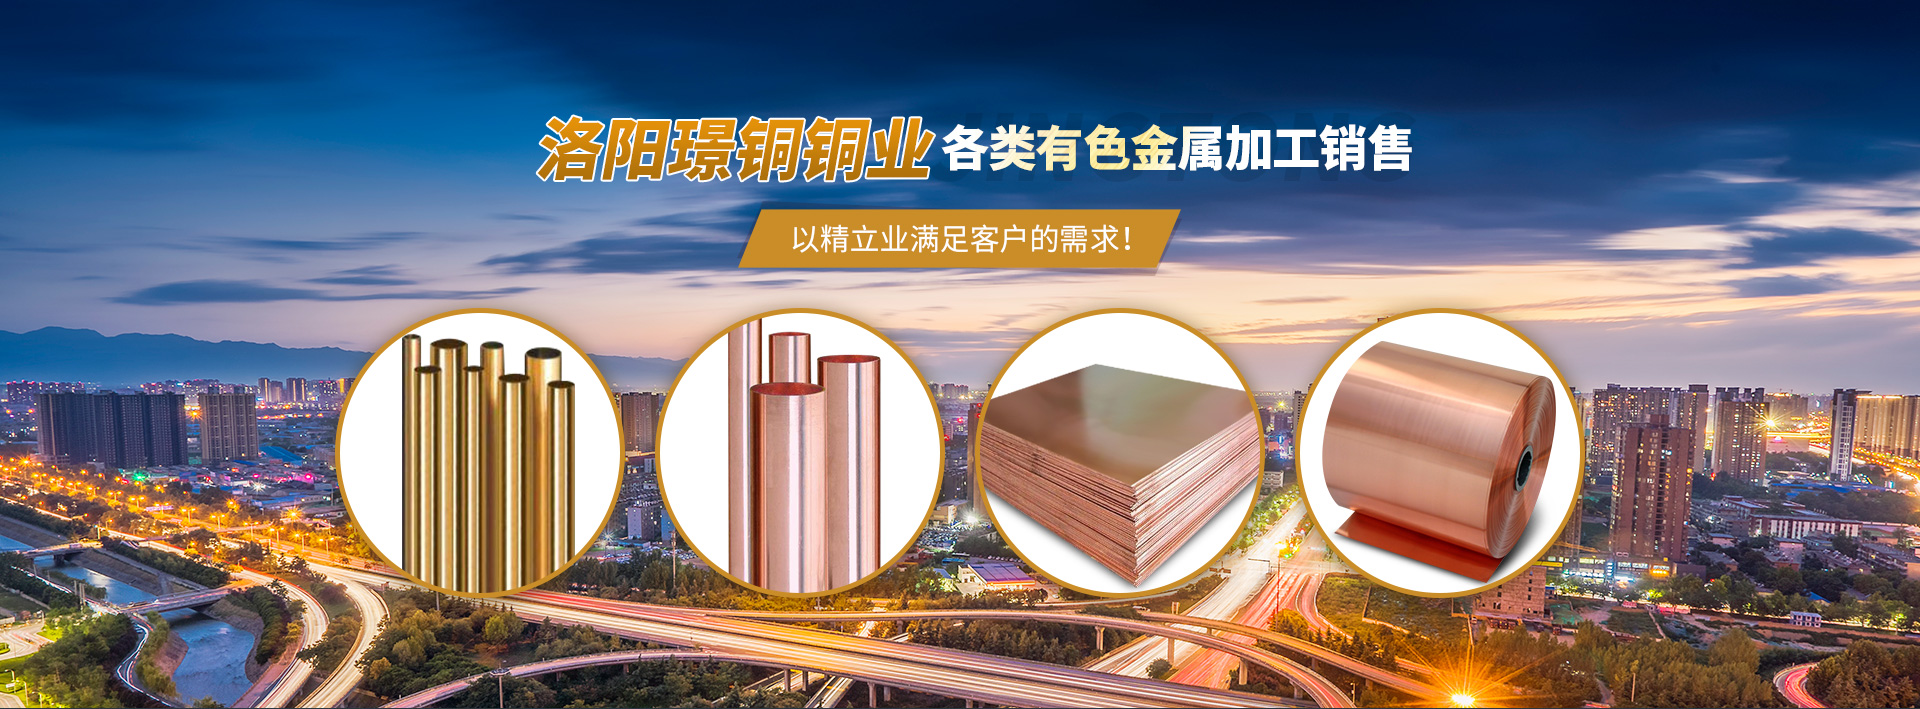 紫铜带-紫铜板-紫铜管厂家-BG大游(中国)科技有限公司